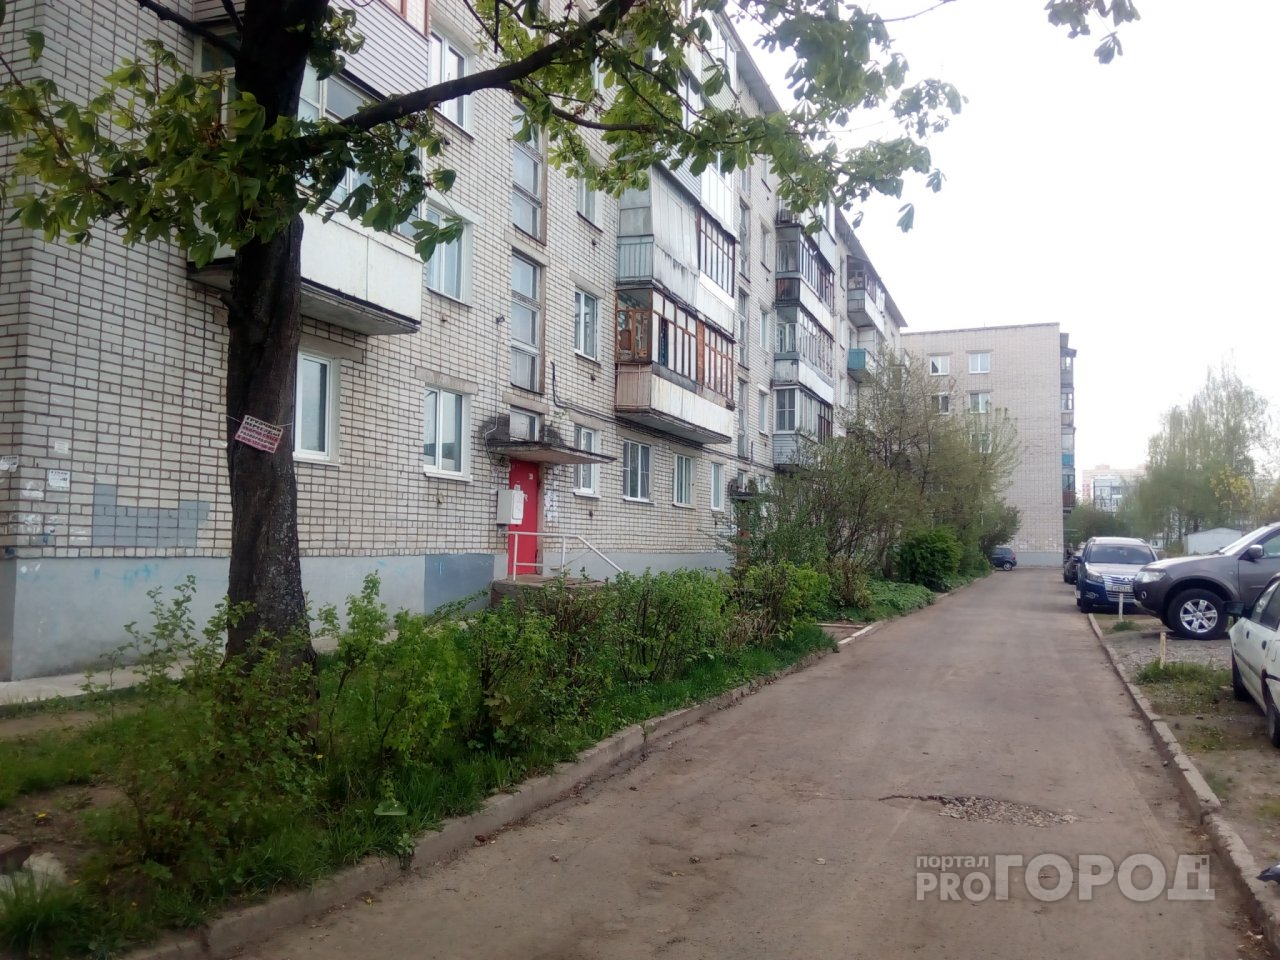 В Ярославле погибла женщина после падения из окна